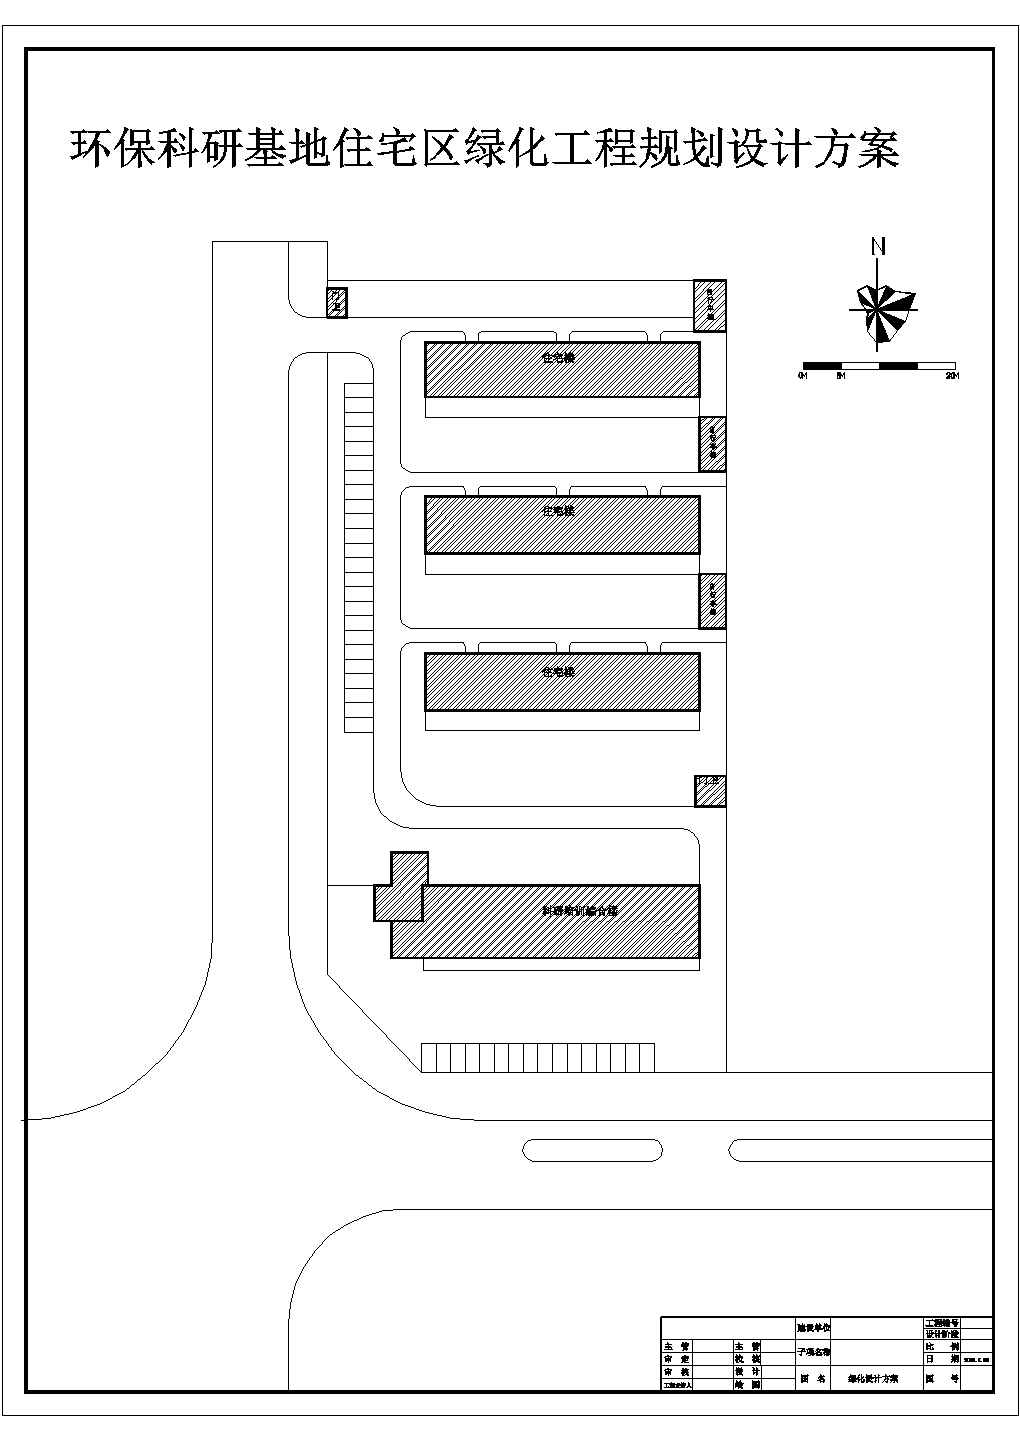 某环保科研基地住宅区绿化规划设计详细施工方案CAD图纸